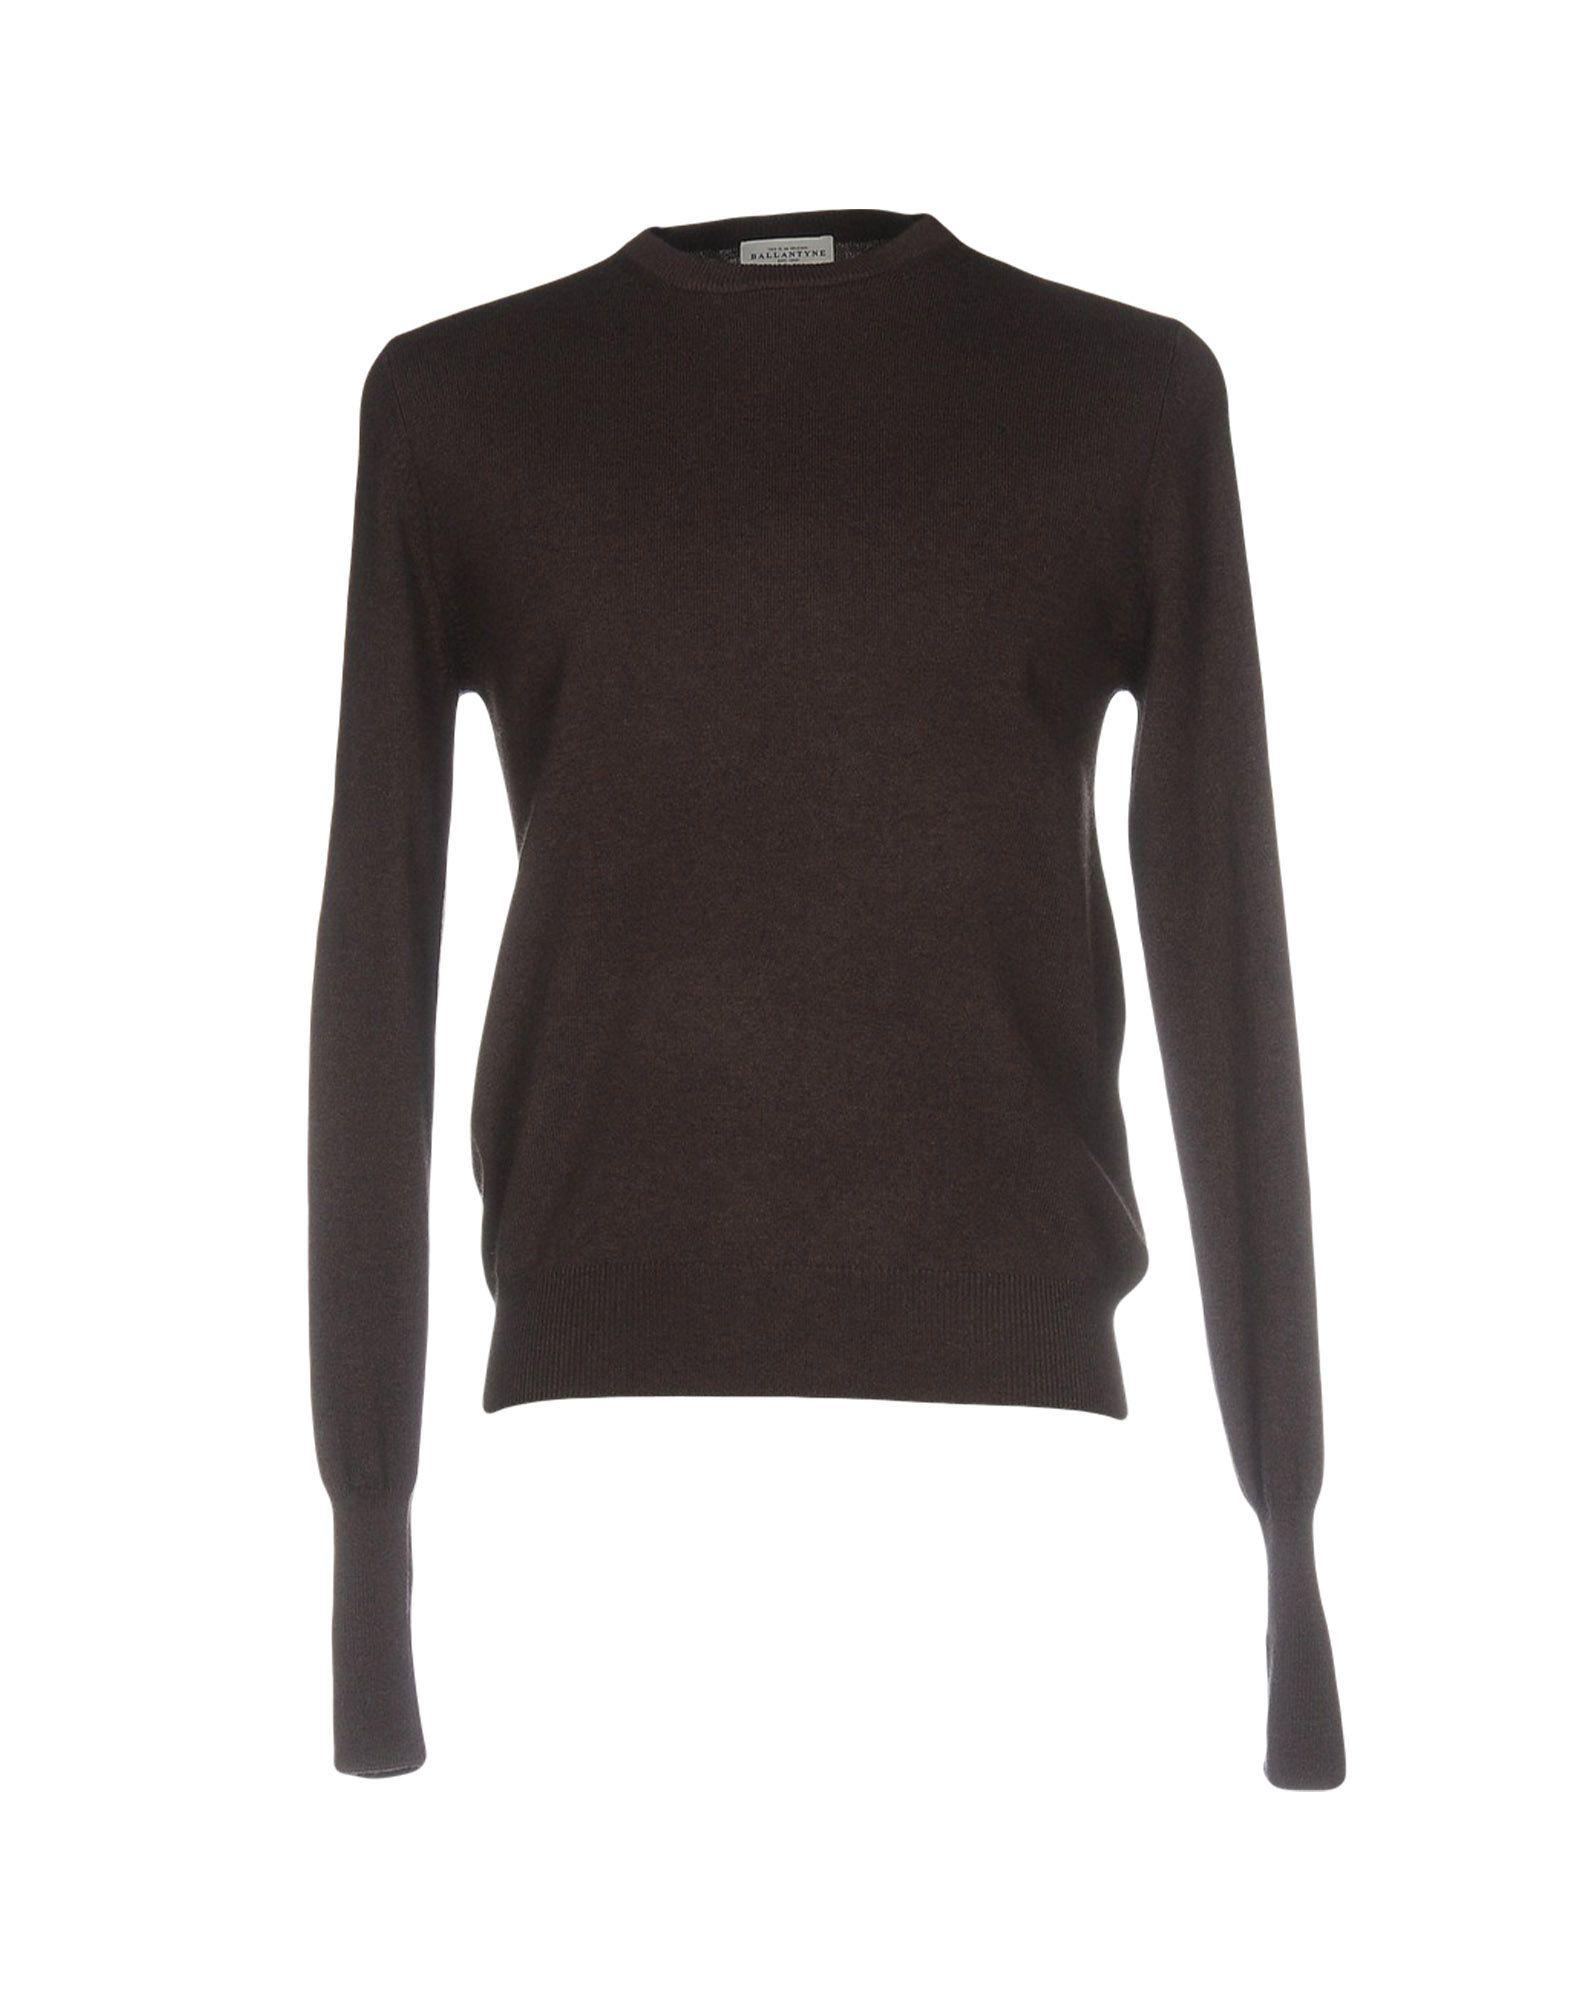 Lyst - Ballantyne Sweaters in Brown for Men